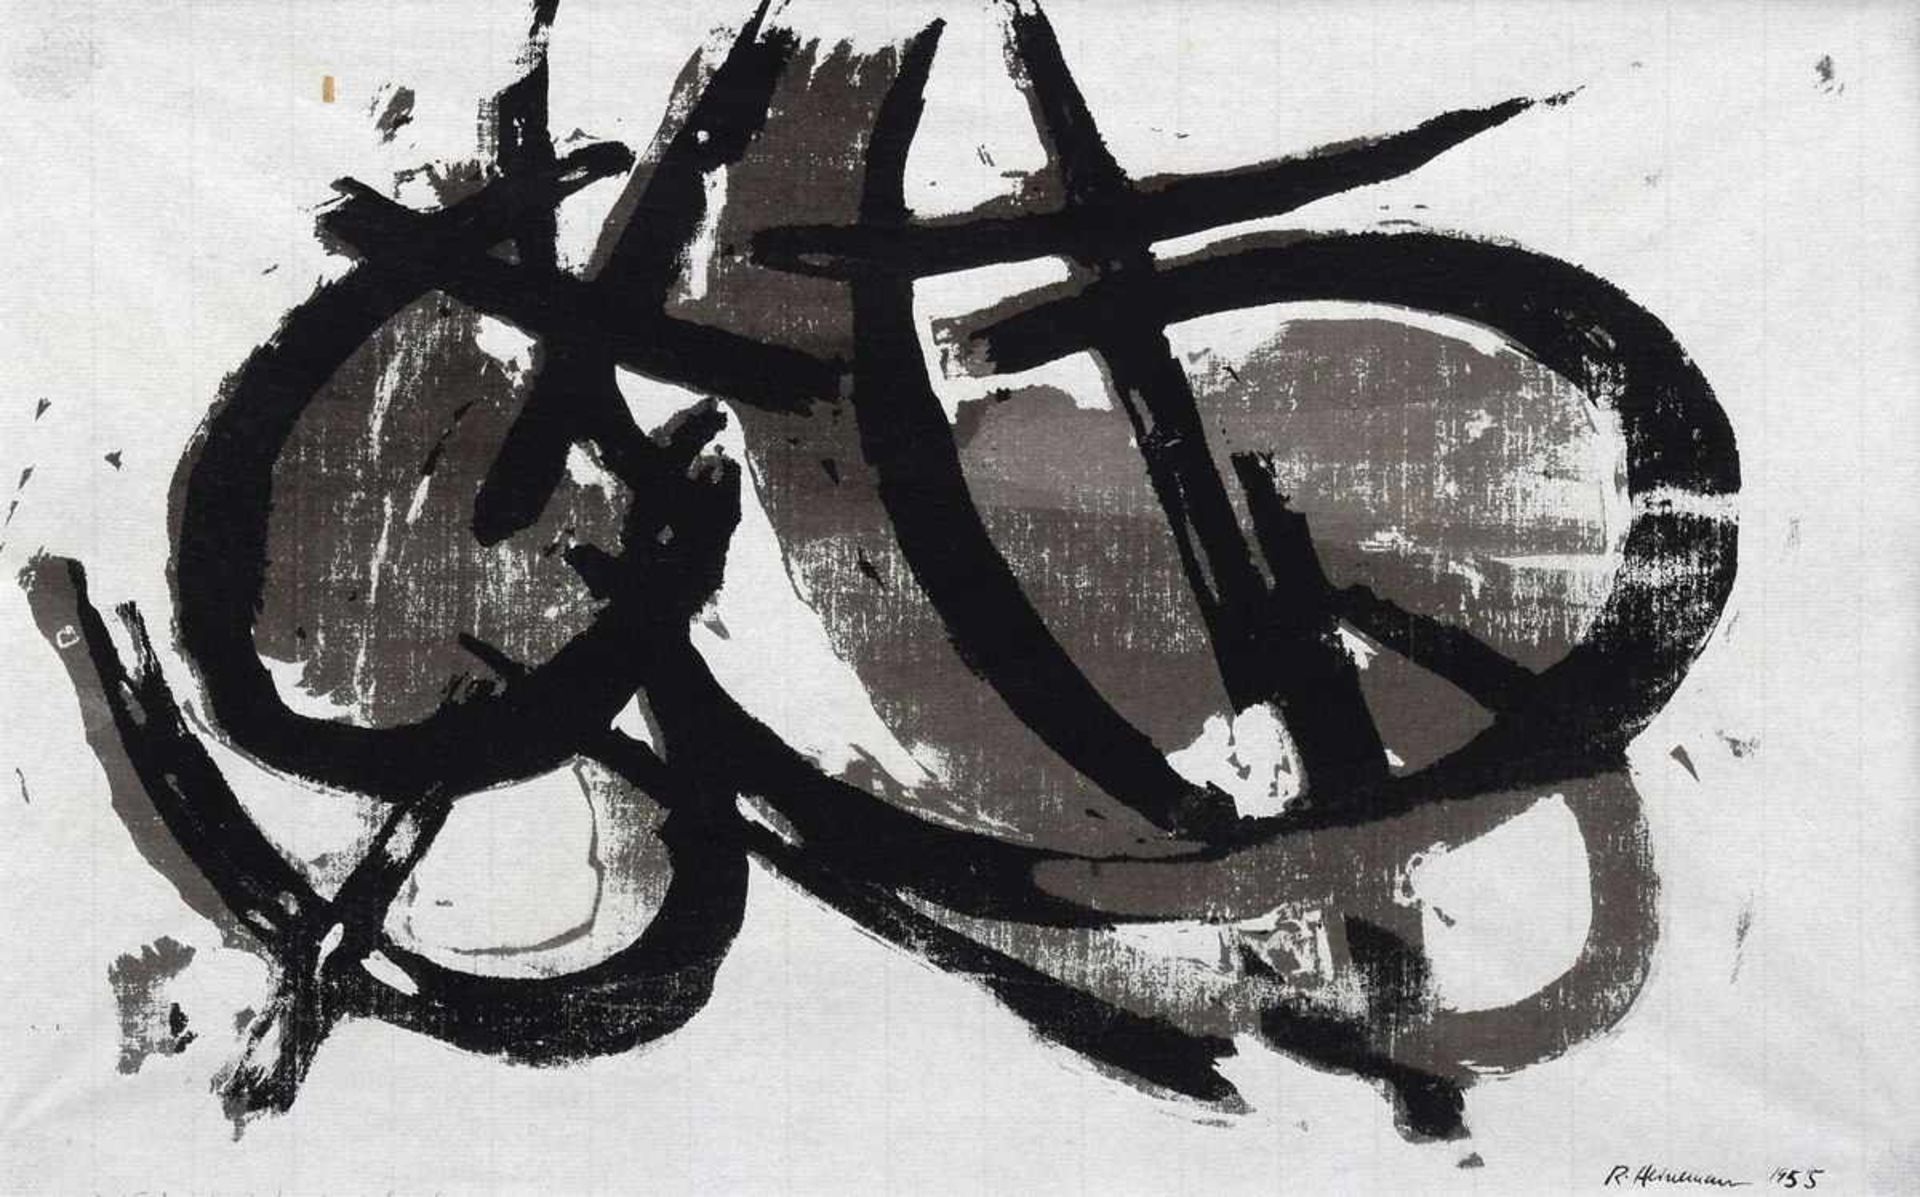 Heinemann, Reinhard (1895-1967) "Abstrakte Komposition" 1955, Lithographie, u.r. sign./dat., 30x44cm